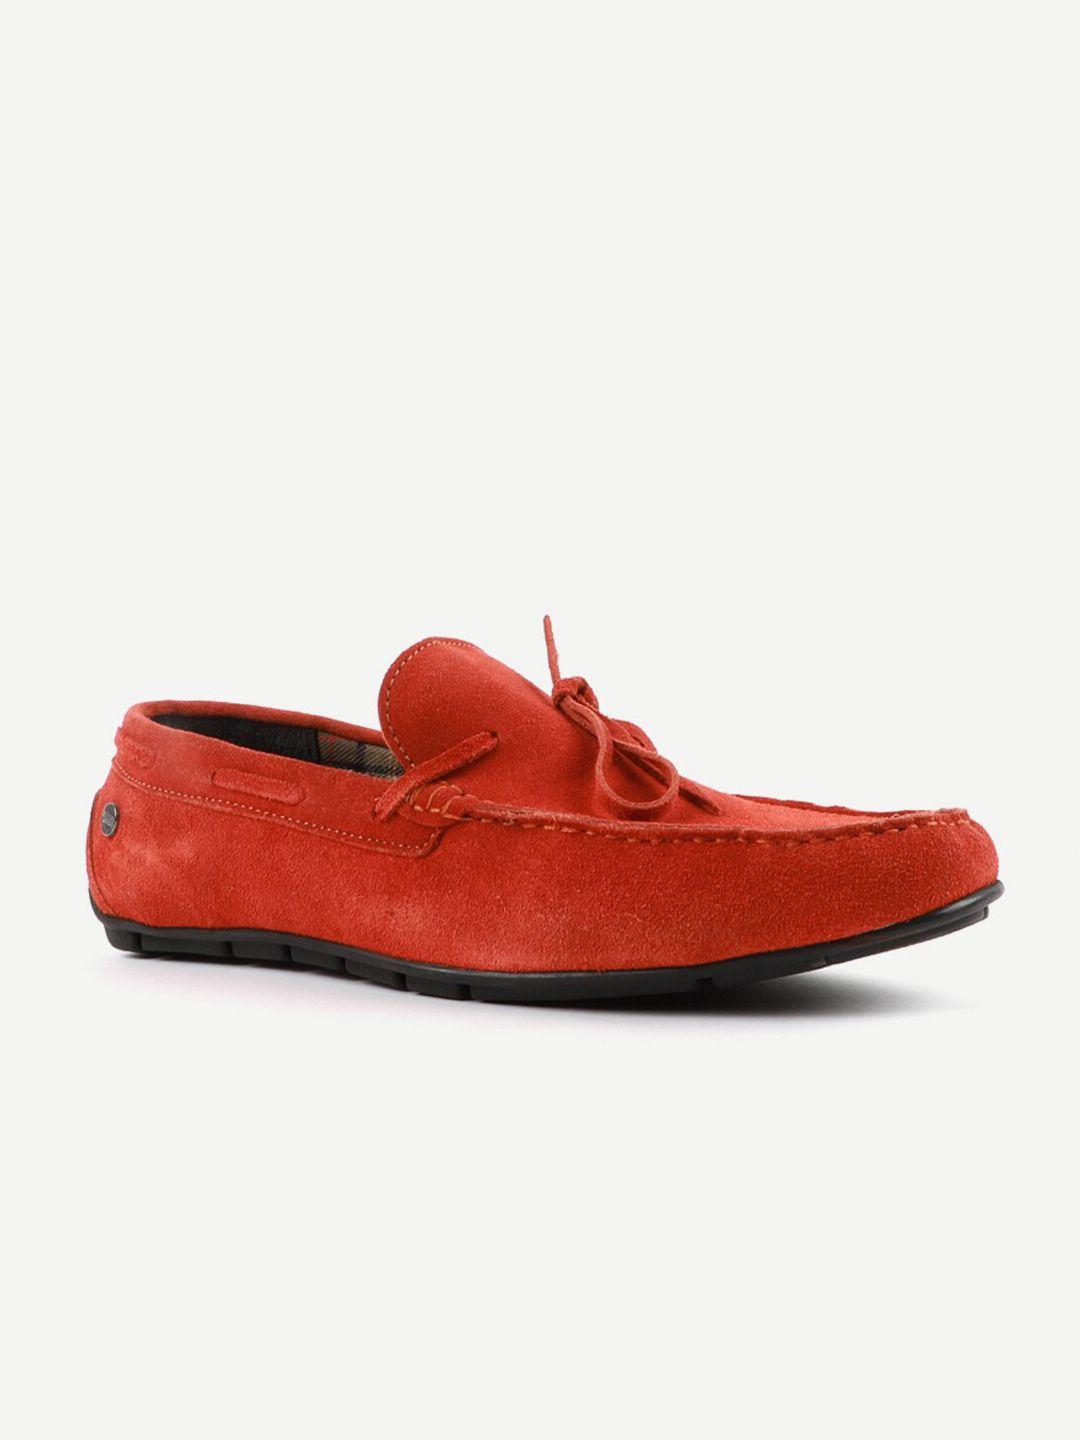 carlton london men coral driving shoes